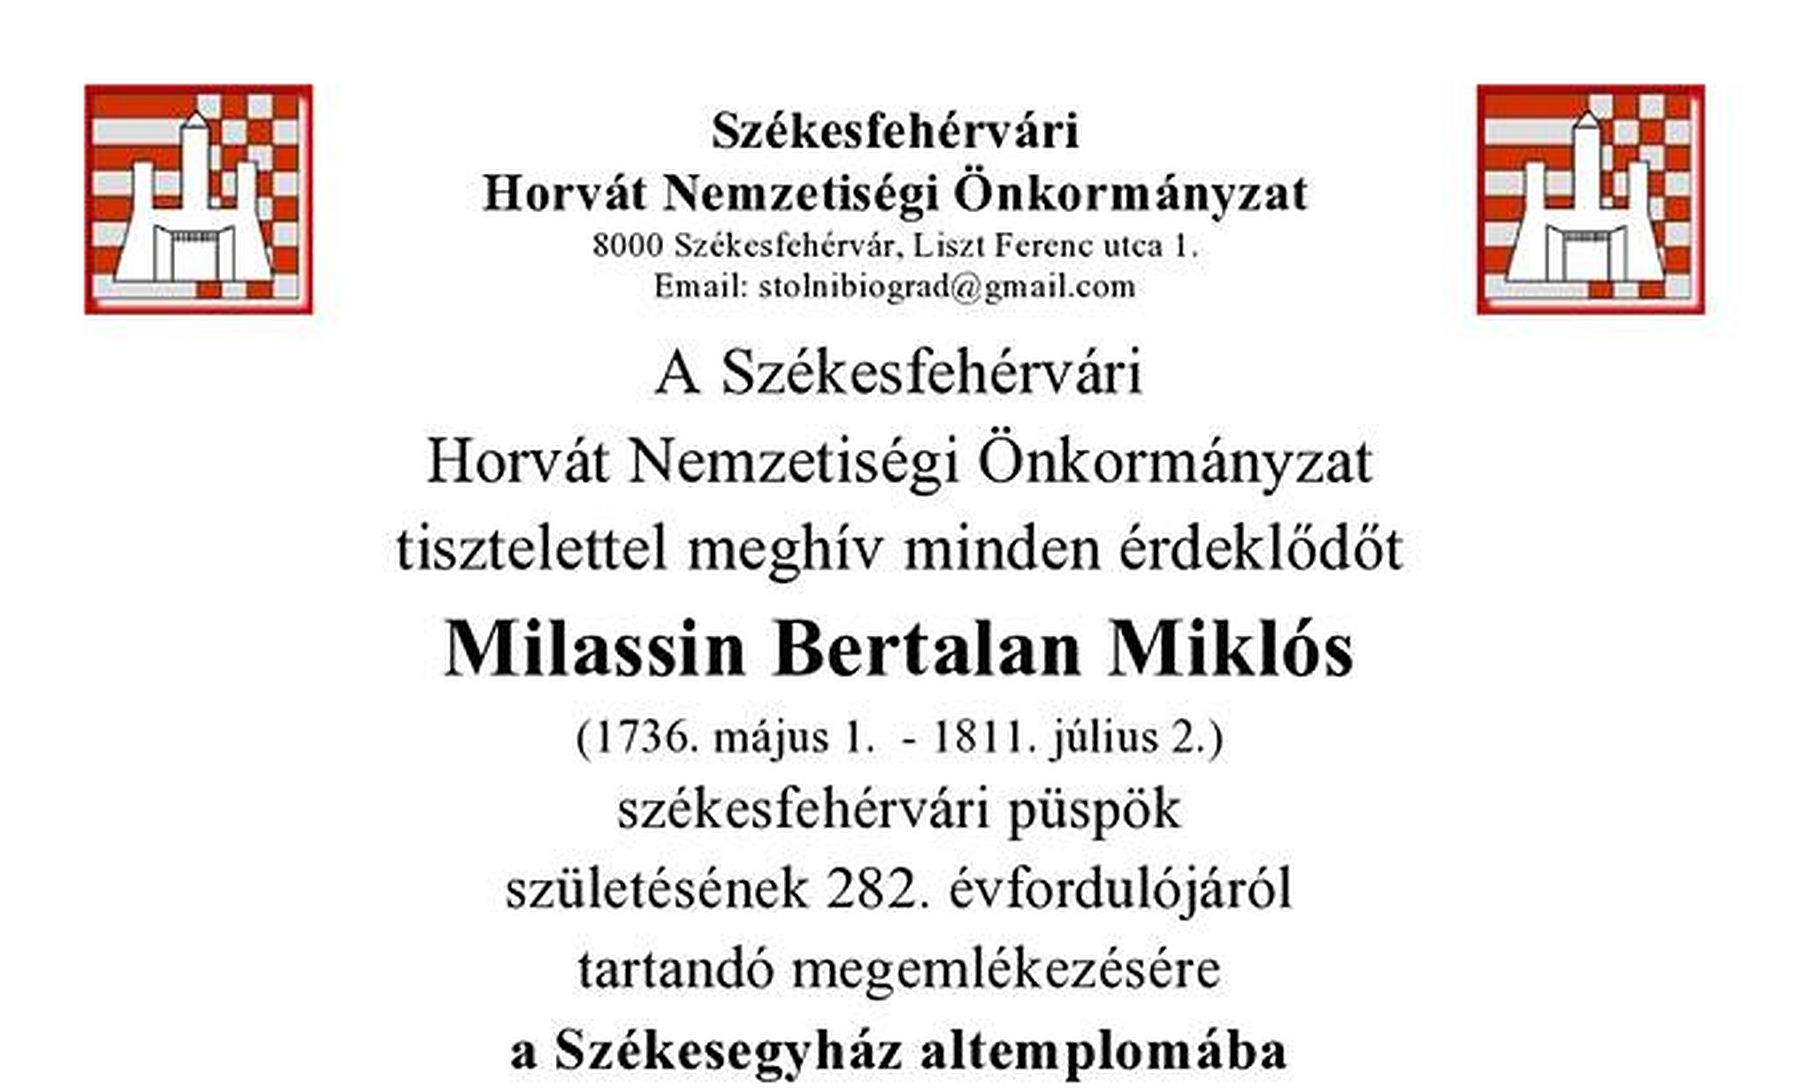 Milassin Bertalan Miklósra, Fehérvár második püspökére emlékeznek pénteken